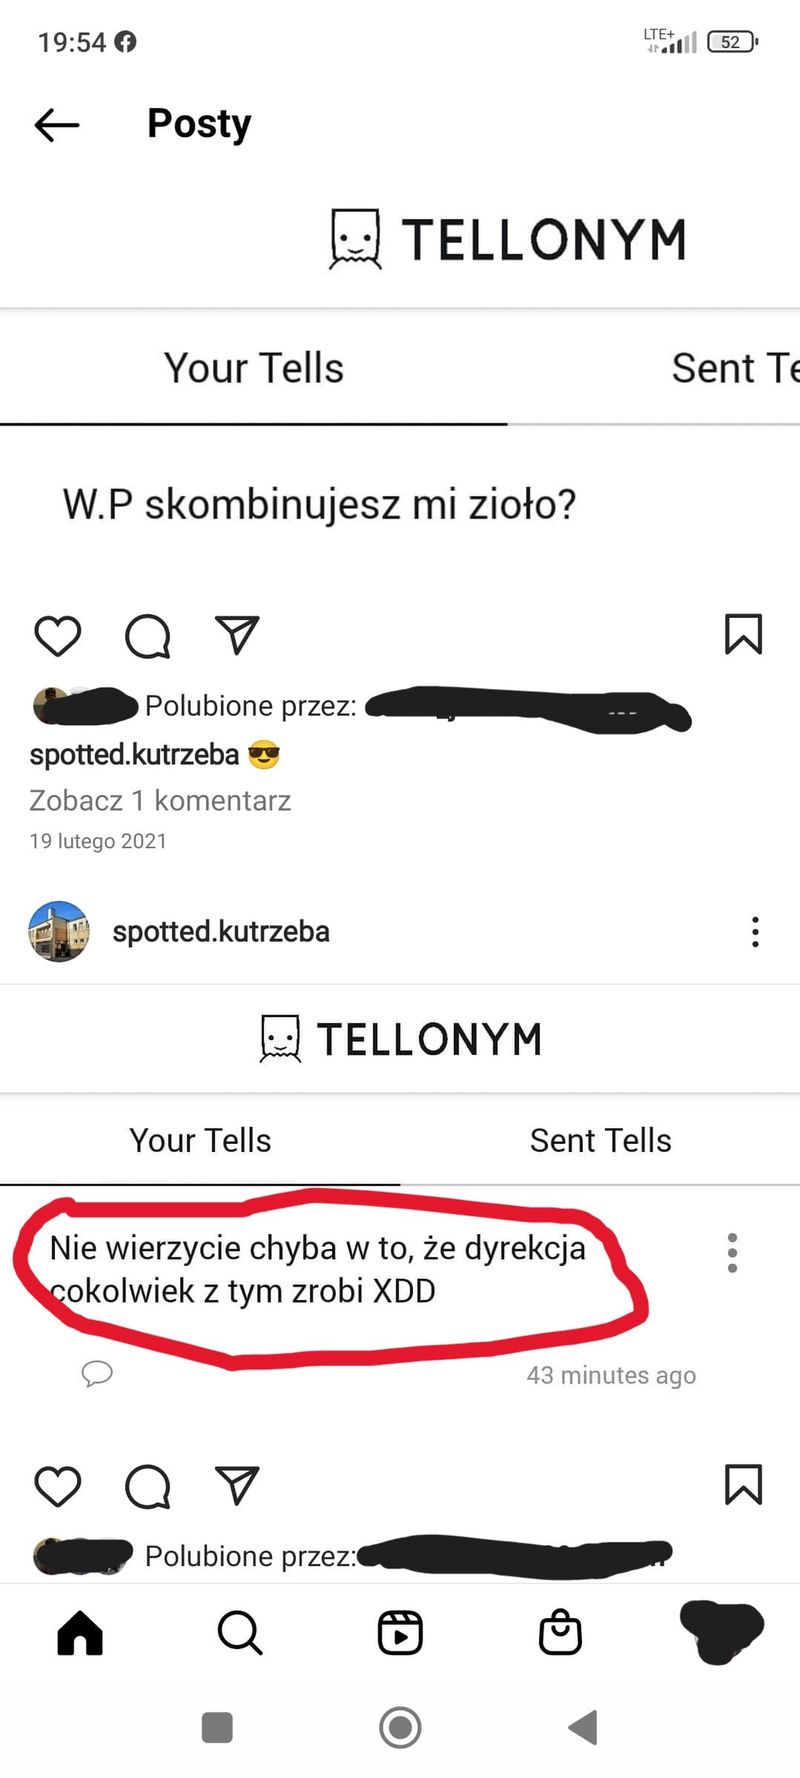 wpoznaniu.pl